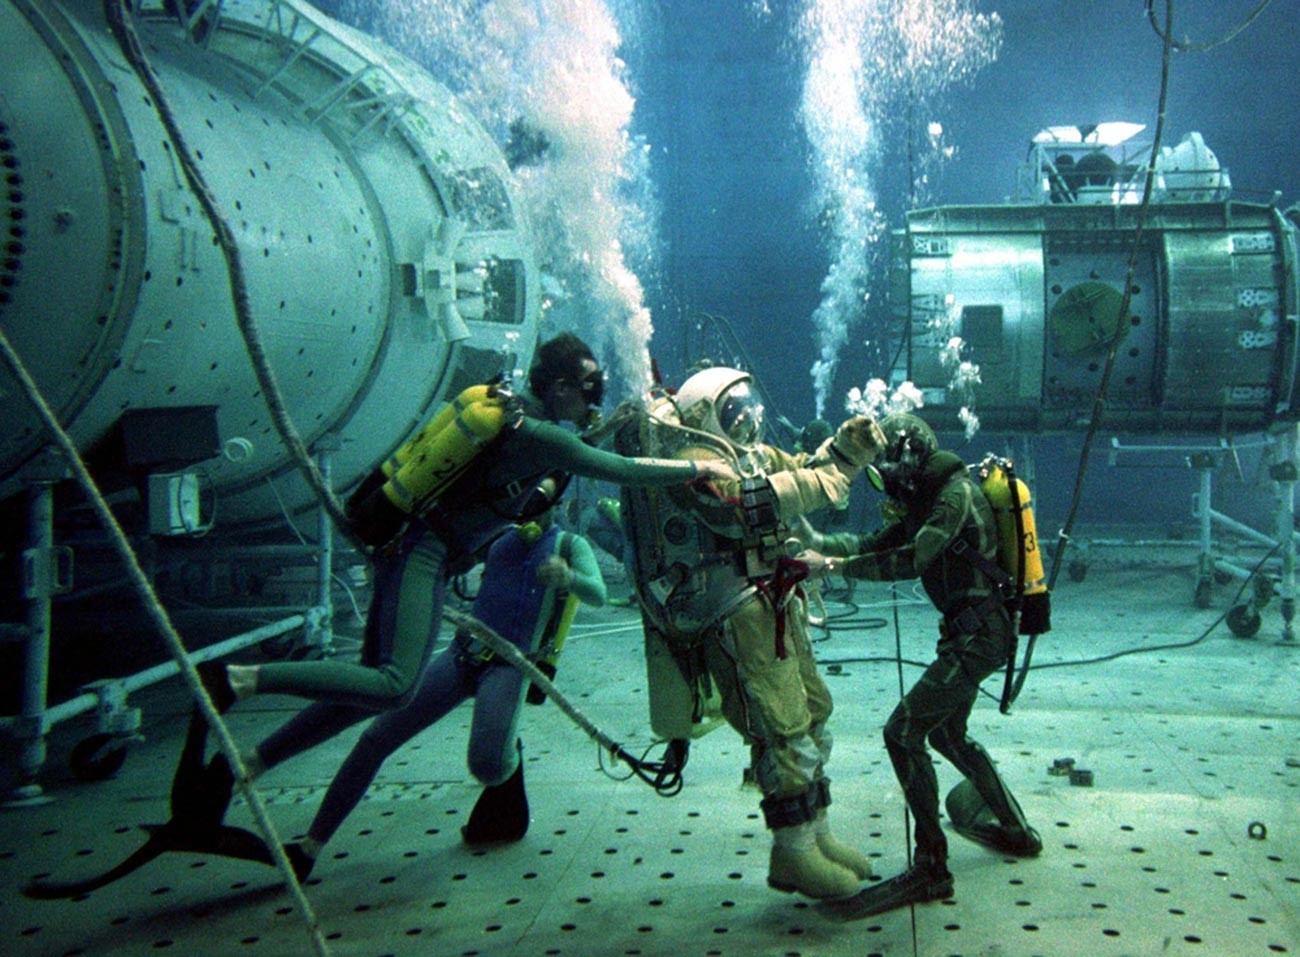 Instrutor de teste russo Oleg Puchkar é auxiliado por mergulhadores durante testes subaquáticos em uma réplica da estação espacial Mir danificada, em 4 de julho de 1997